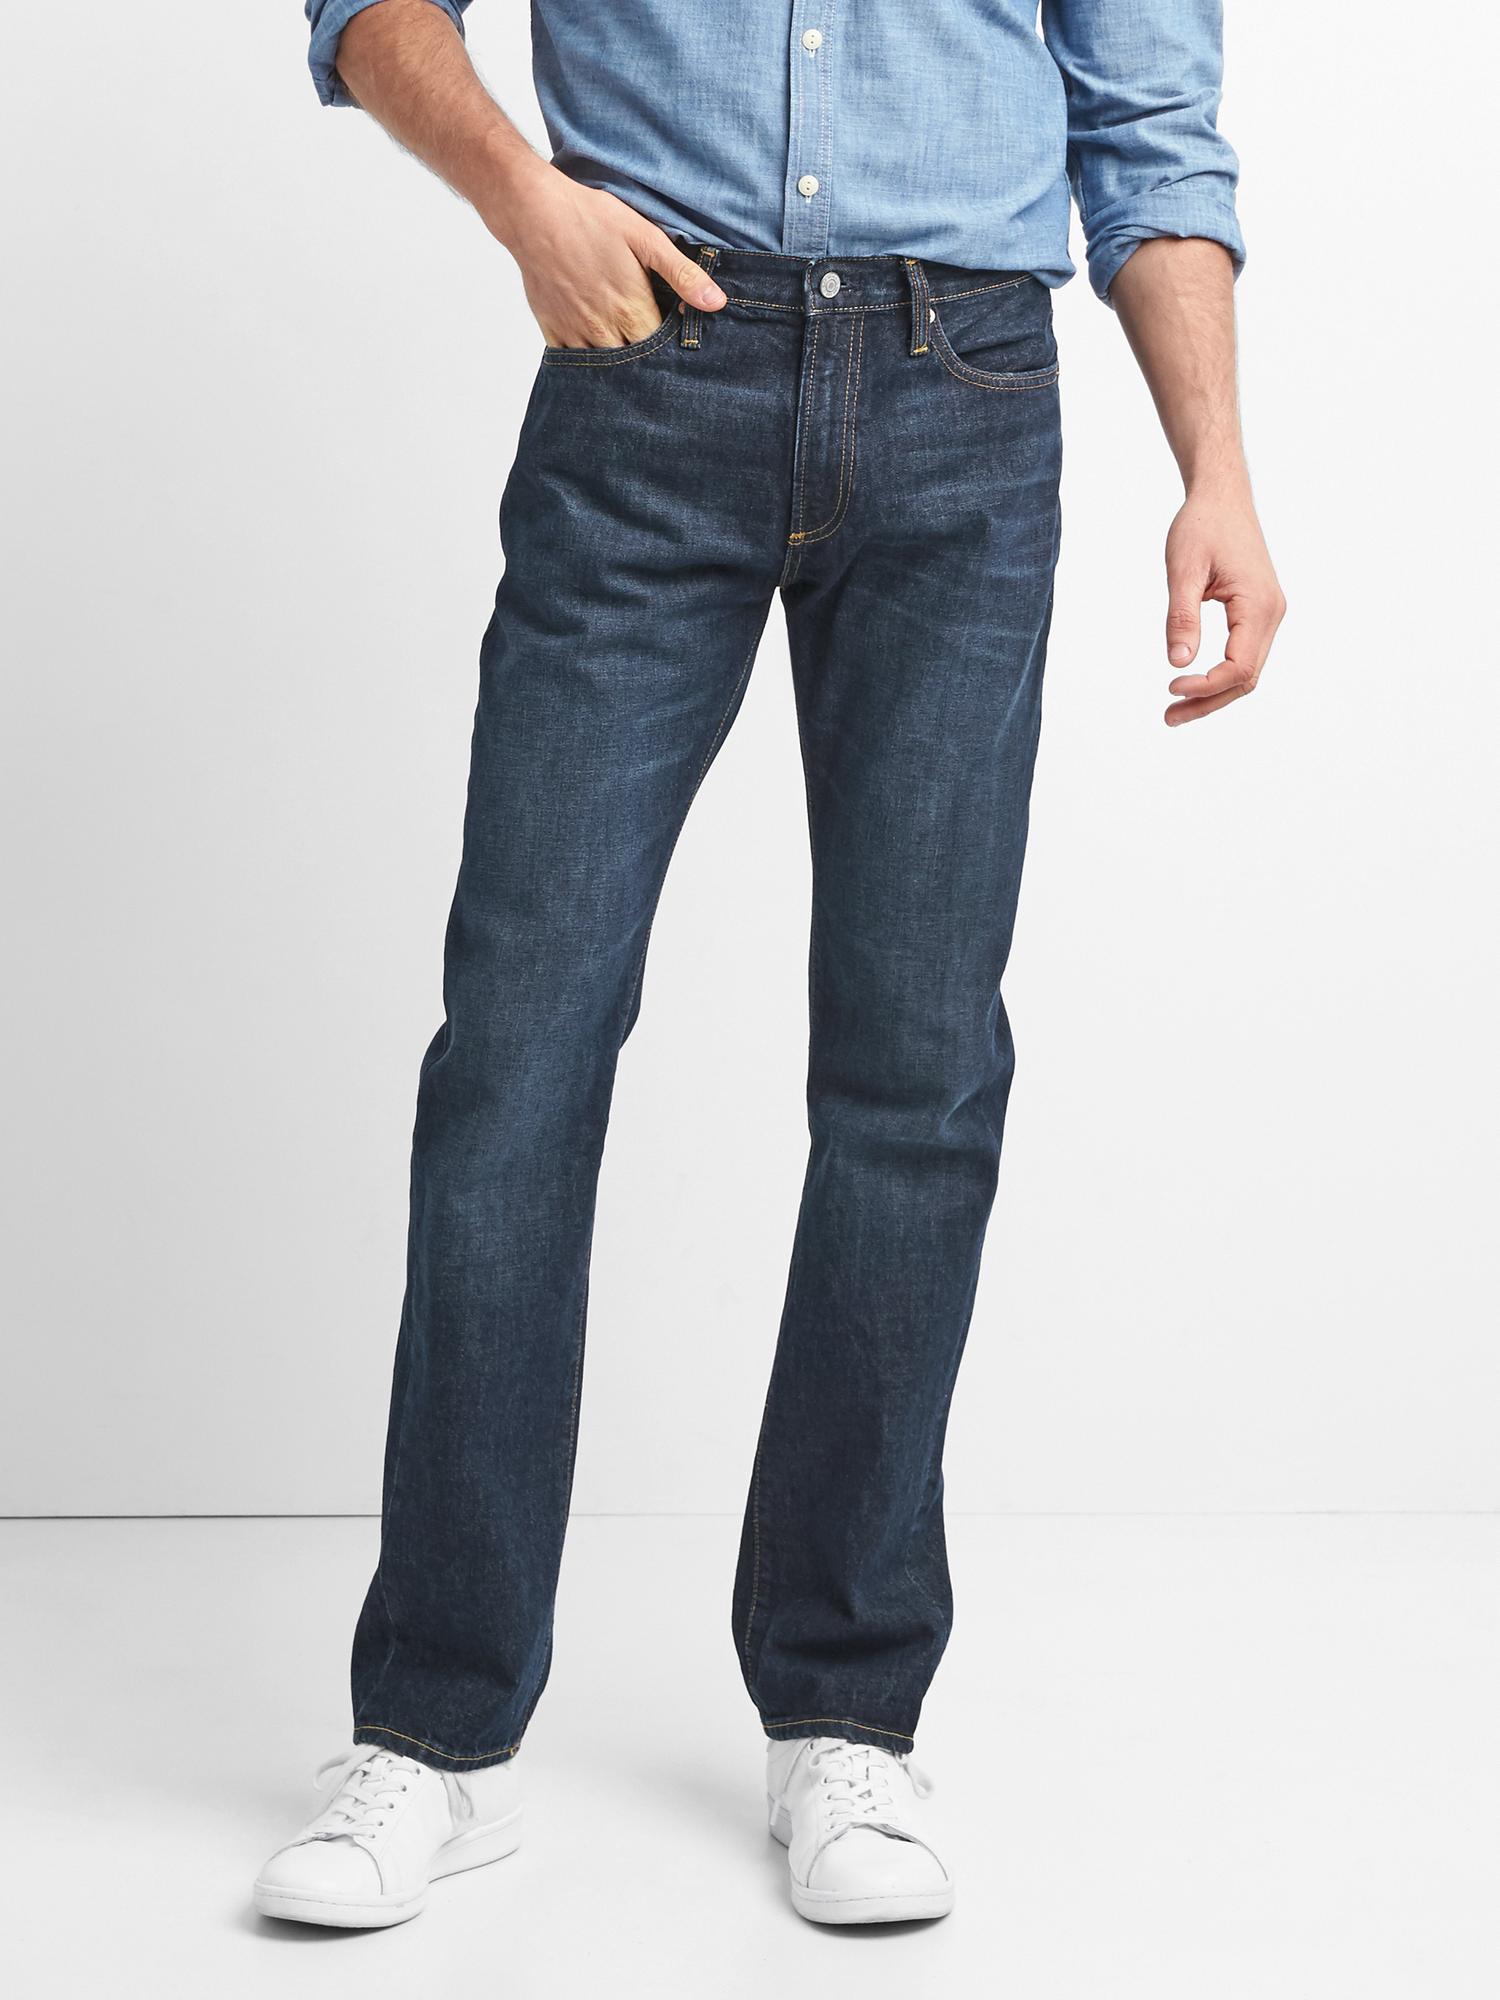 Jeans in Slim Fit | Gap